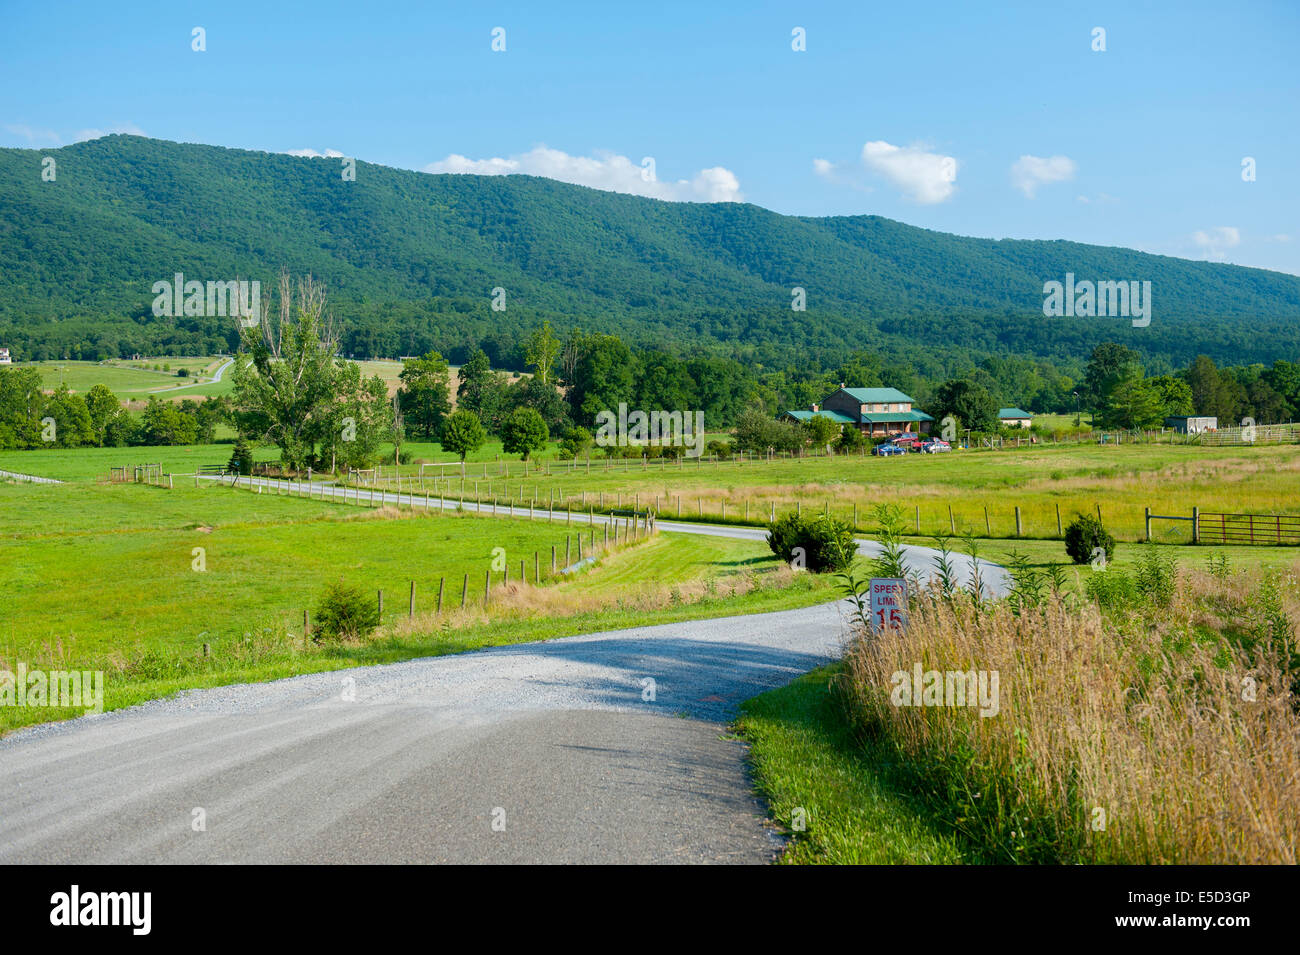 USA Virginia VA vallée de Shenandoah - Fort Valley - une route de gravier jusqu'à une ferme dans la vallée Banque D'Images